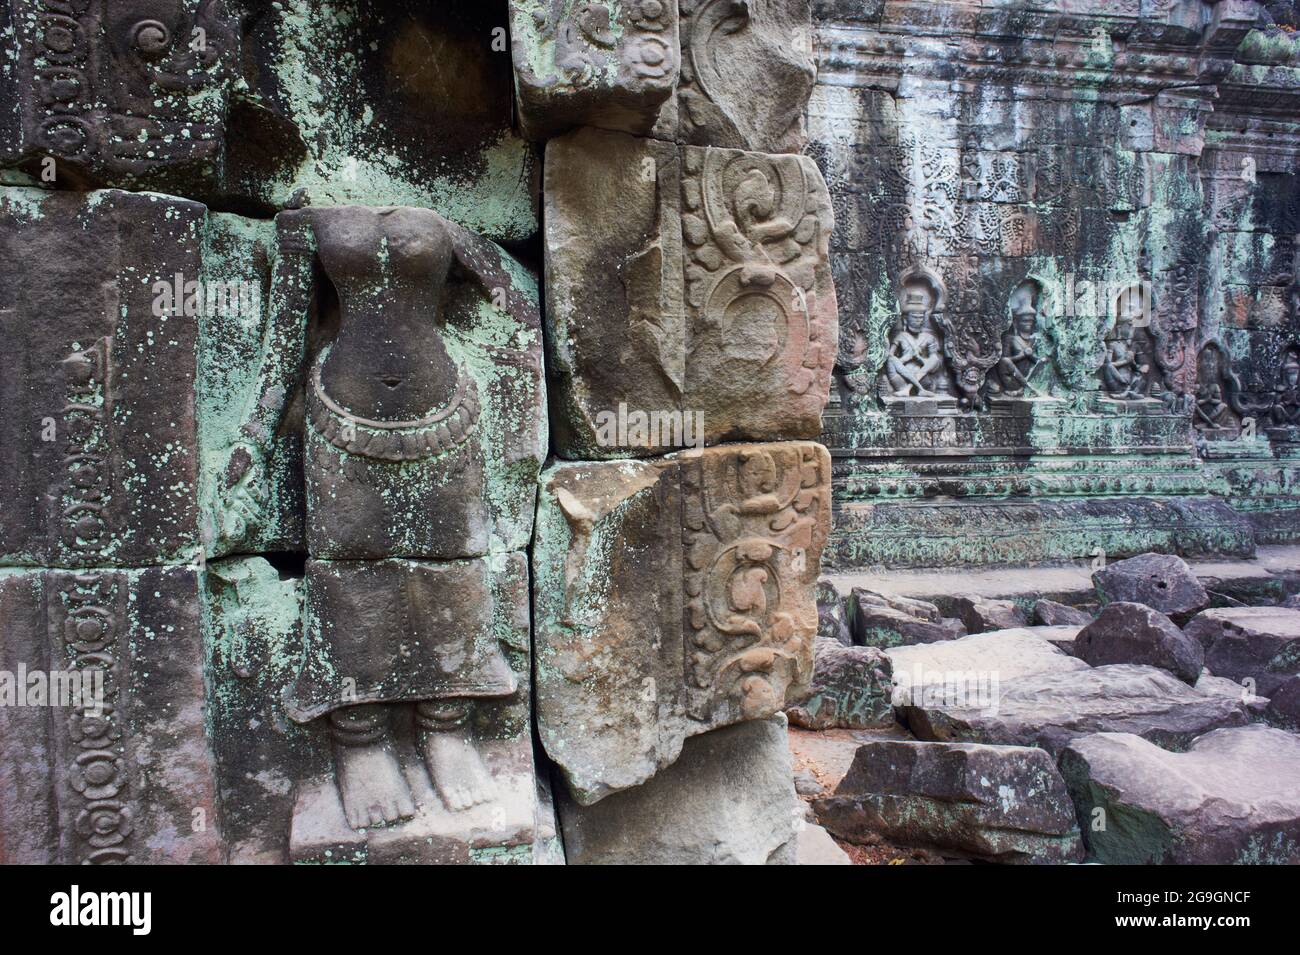 Sudeste de Asia, Camboya, provincia de Siem Reap, sitio de Angkor, patrimonio mundial de la Unesco desde 1992, ciudad antigua, templo de Preah Khan, relieve de Apsara, santo d Foto de stock